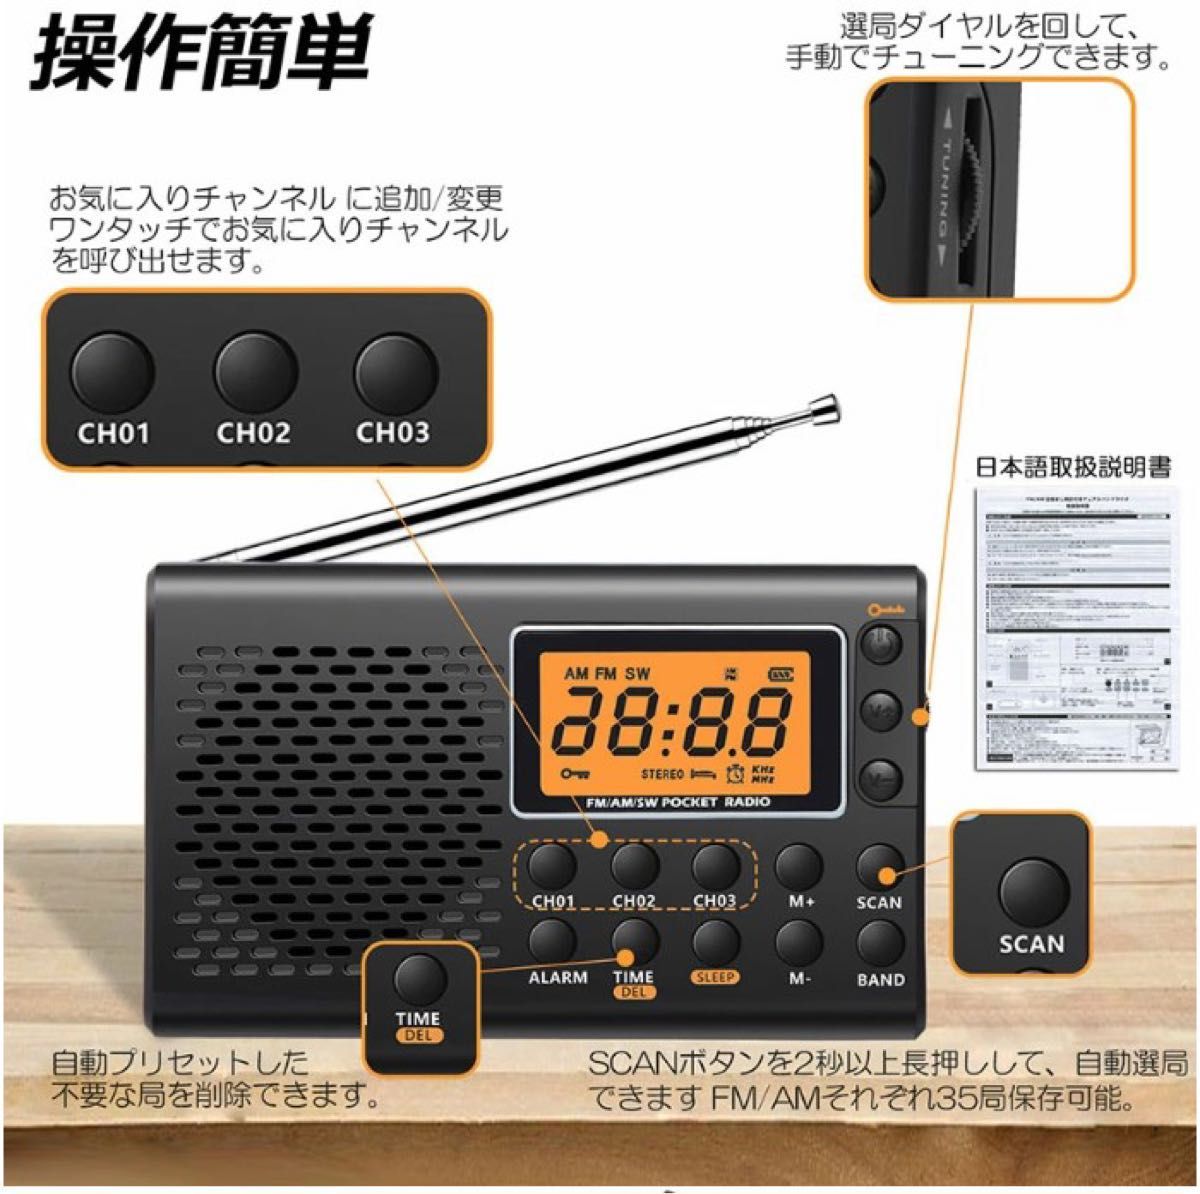 ポケット ラジオ 防災 小型 おしゃれ ポータブルラジオ AM/FM ワイドFM 携帯ラジオ 高感度 日本語取扱説明書付き